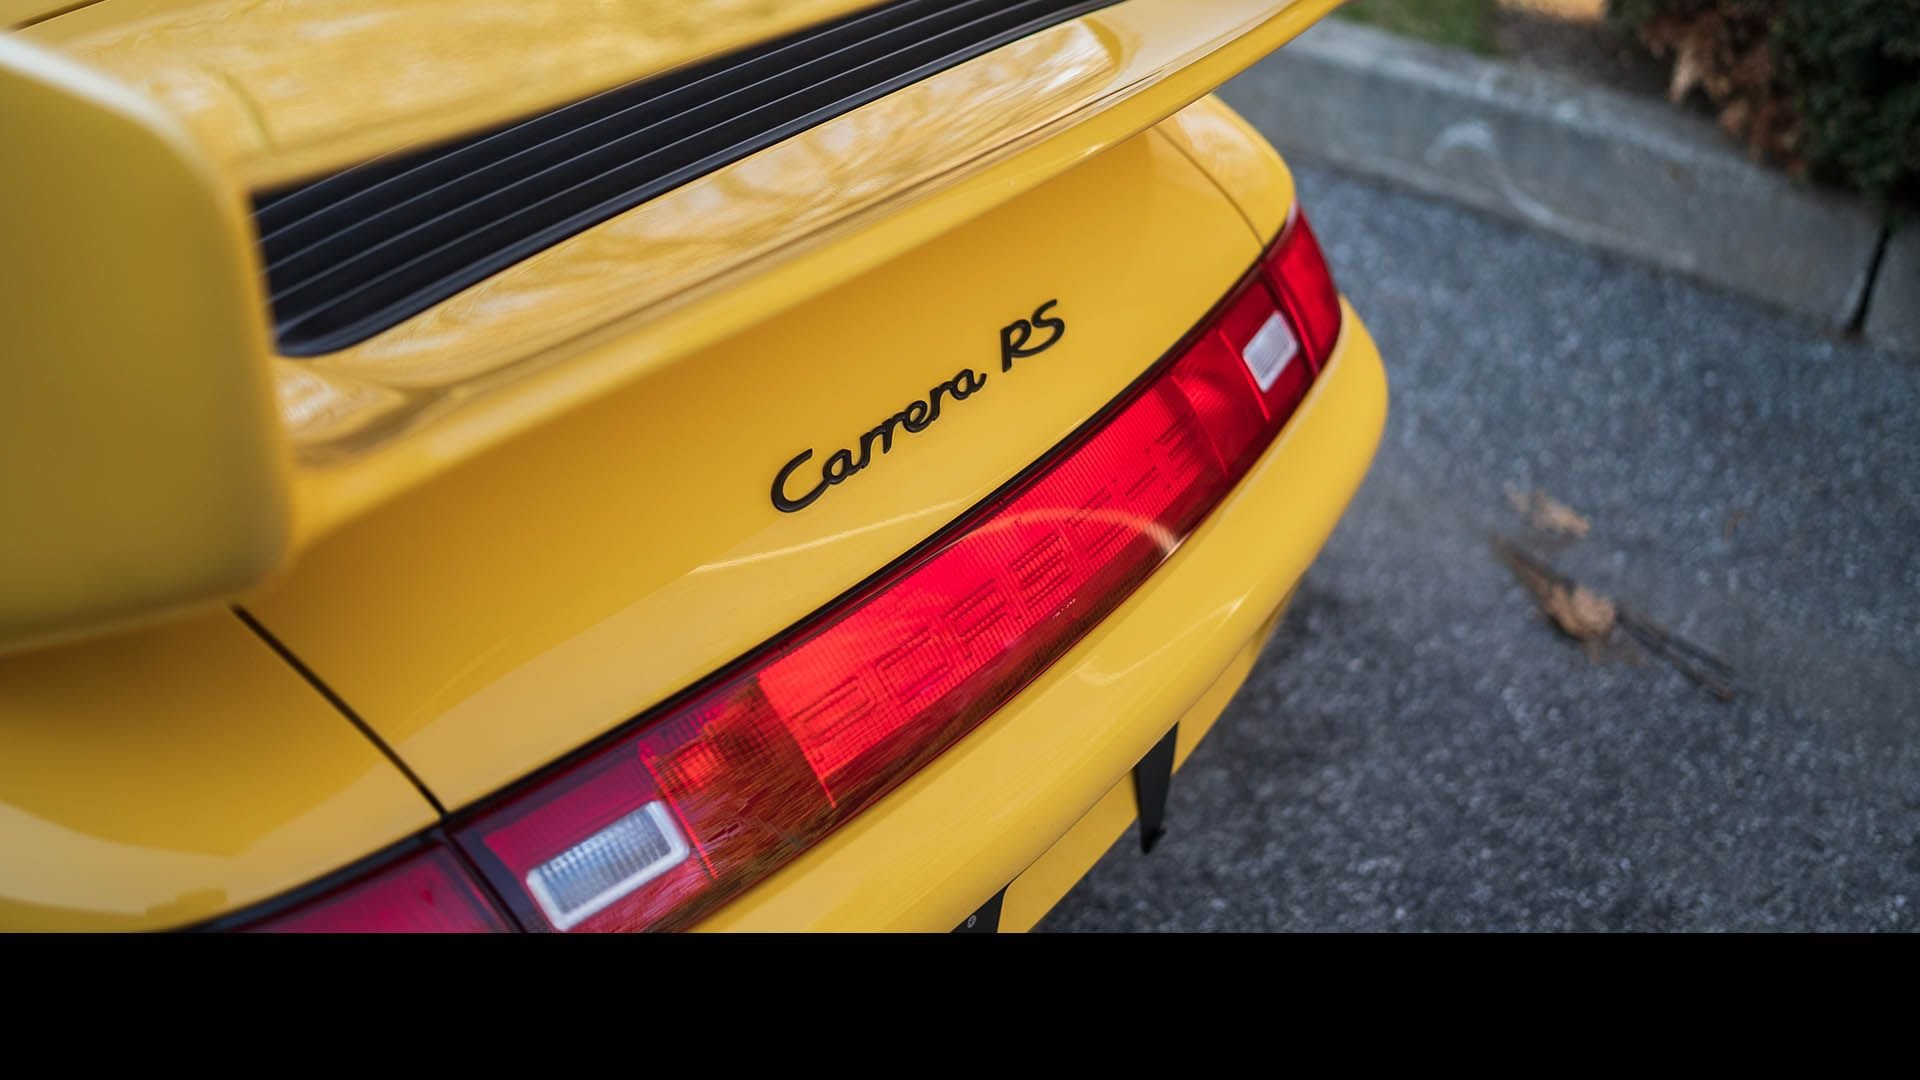 For Sale 1996 Porsche 911 Carrera RS